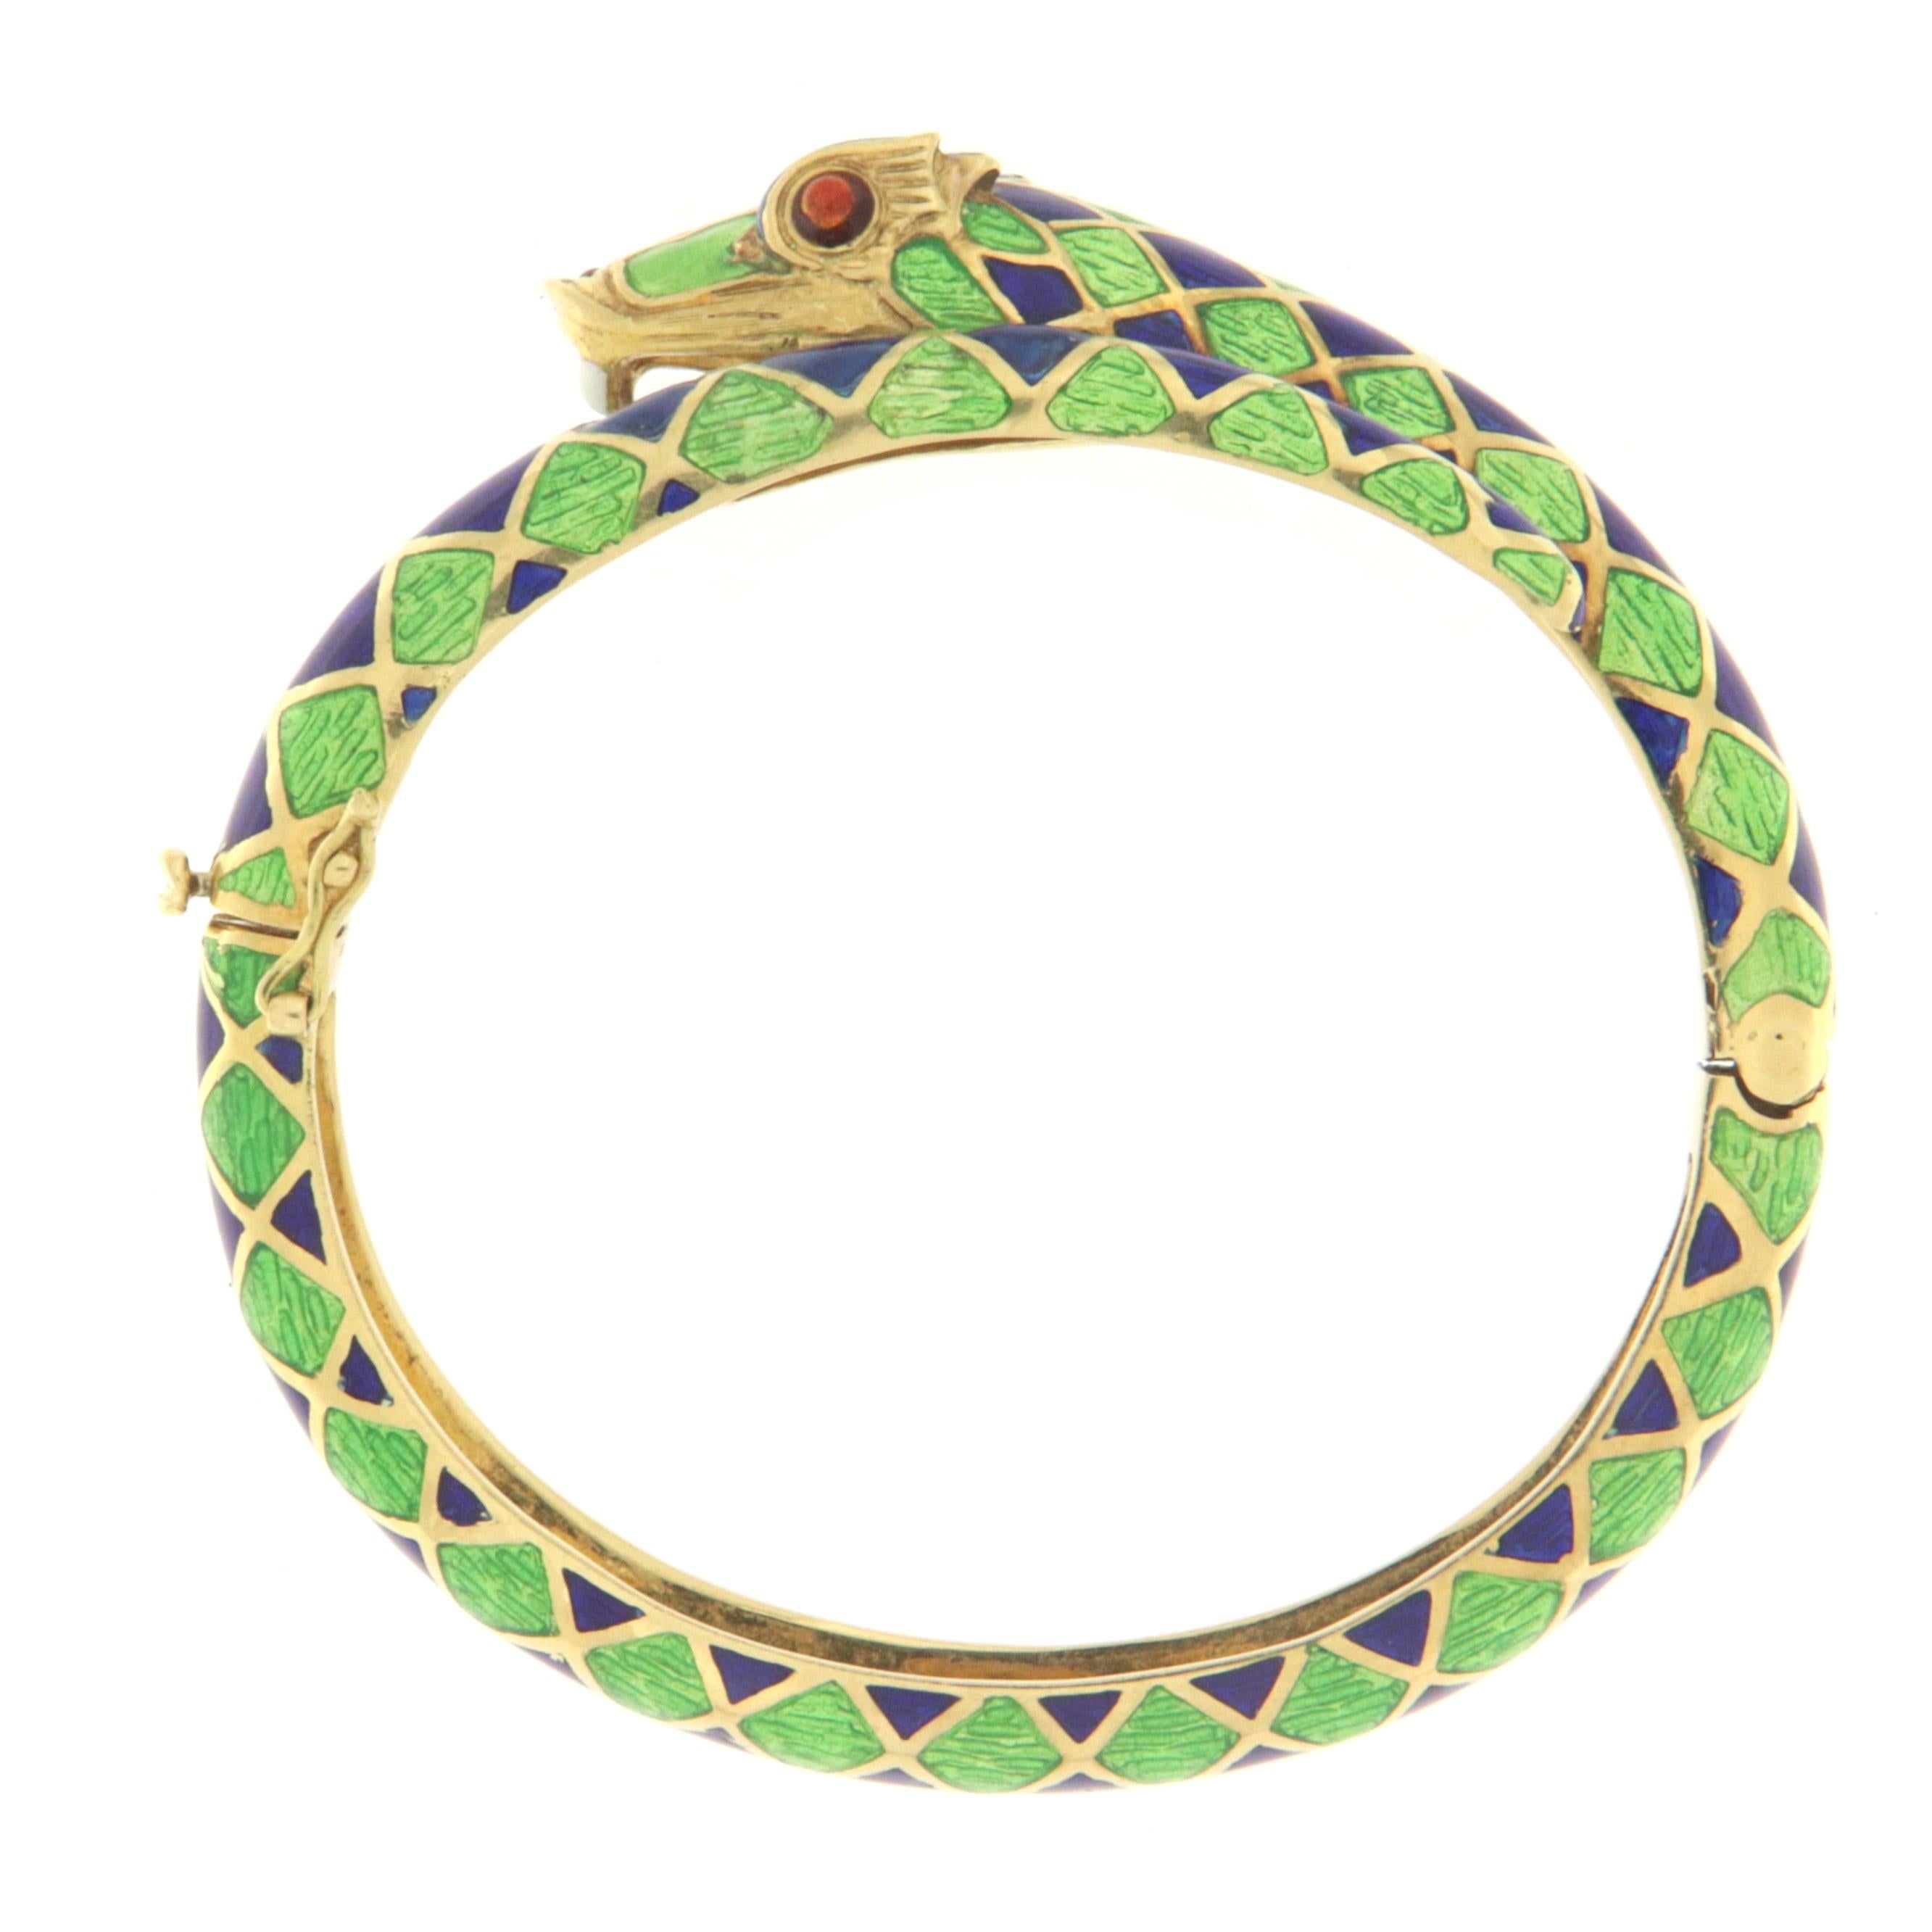 Magnifique bracelet serpent en or jaune 18 carats avec émail vert, bleu et rouge.
Les bijoux en forme de serpent ont toujours un charme particulier et dénotent la grâce, la séduction et le mystère. Dans de nombreuses civilisations, en effet, le